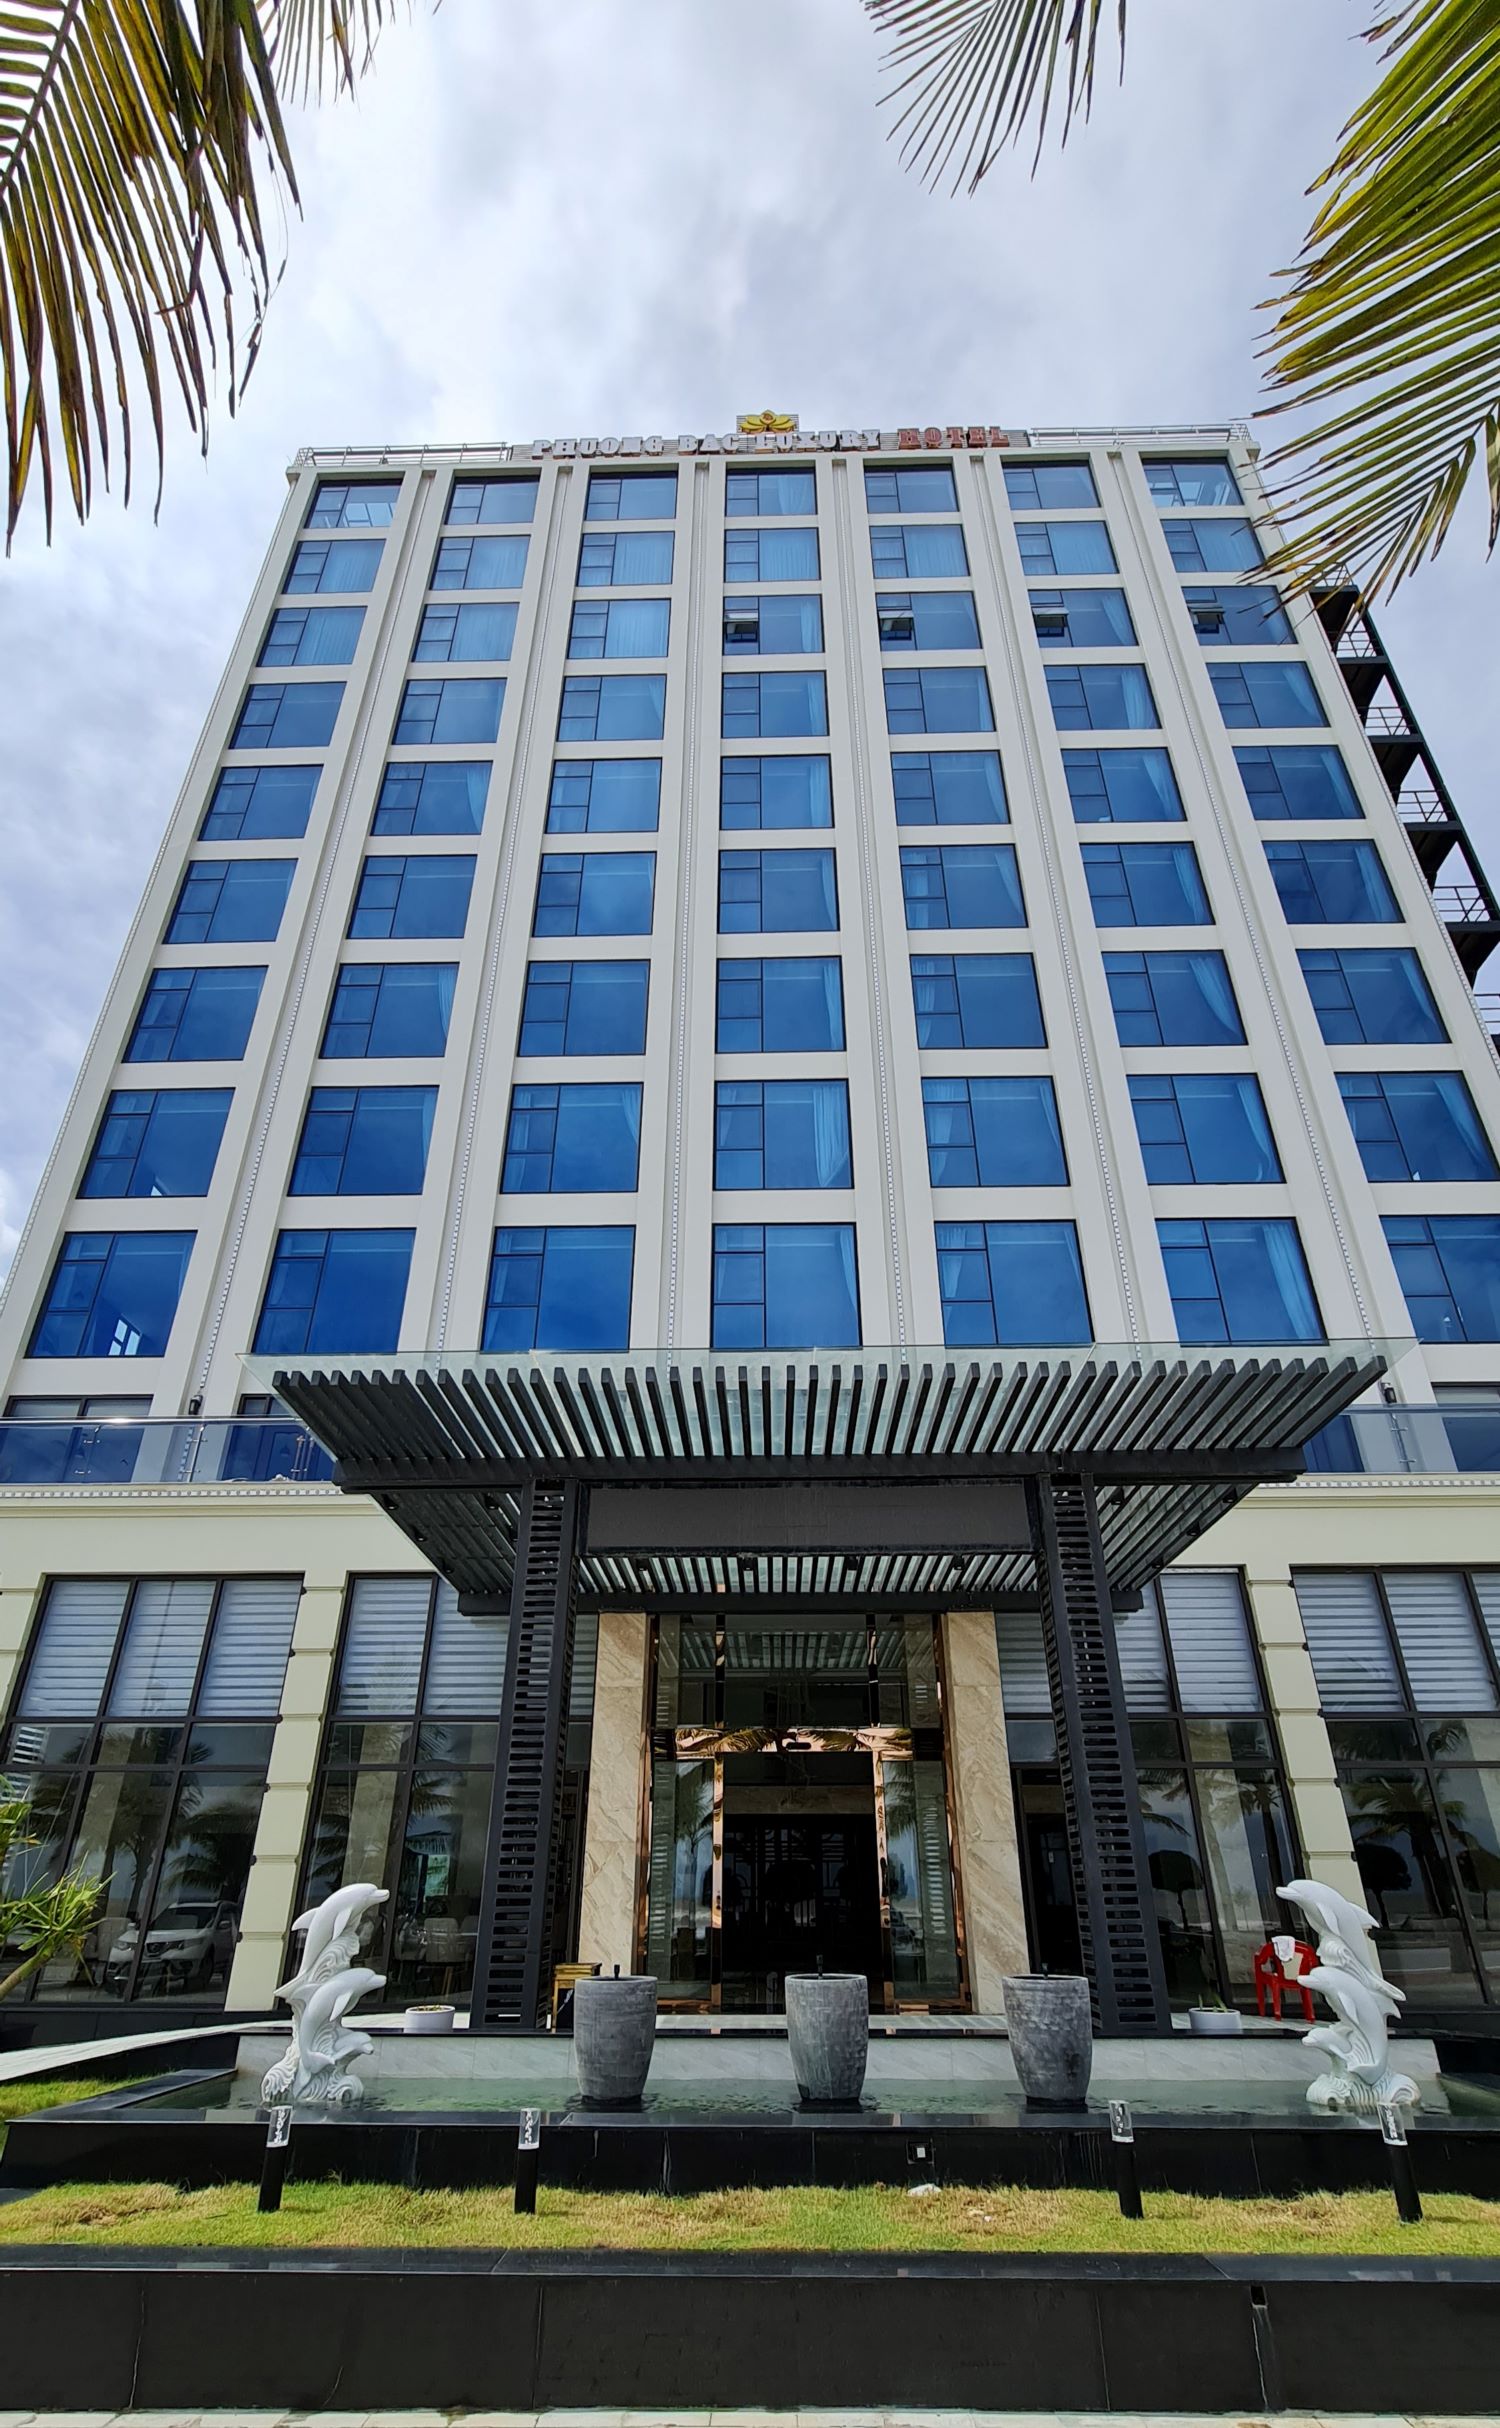 Khách sạn Phương Bắc Quảng Bình 4 sao được tổng cục du lịch cấp